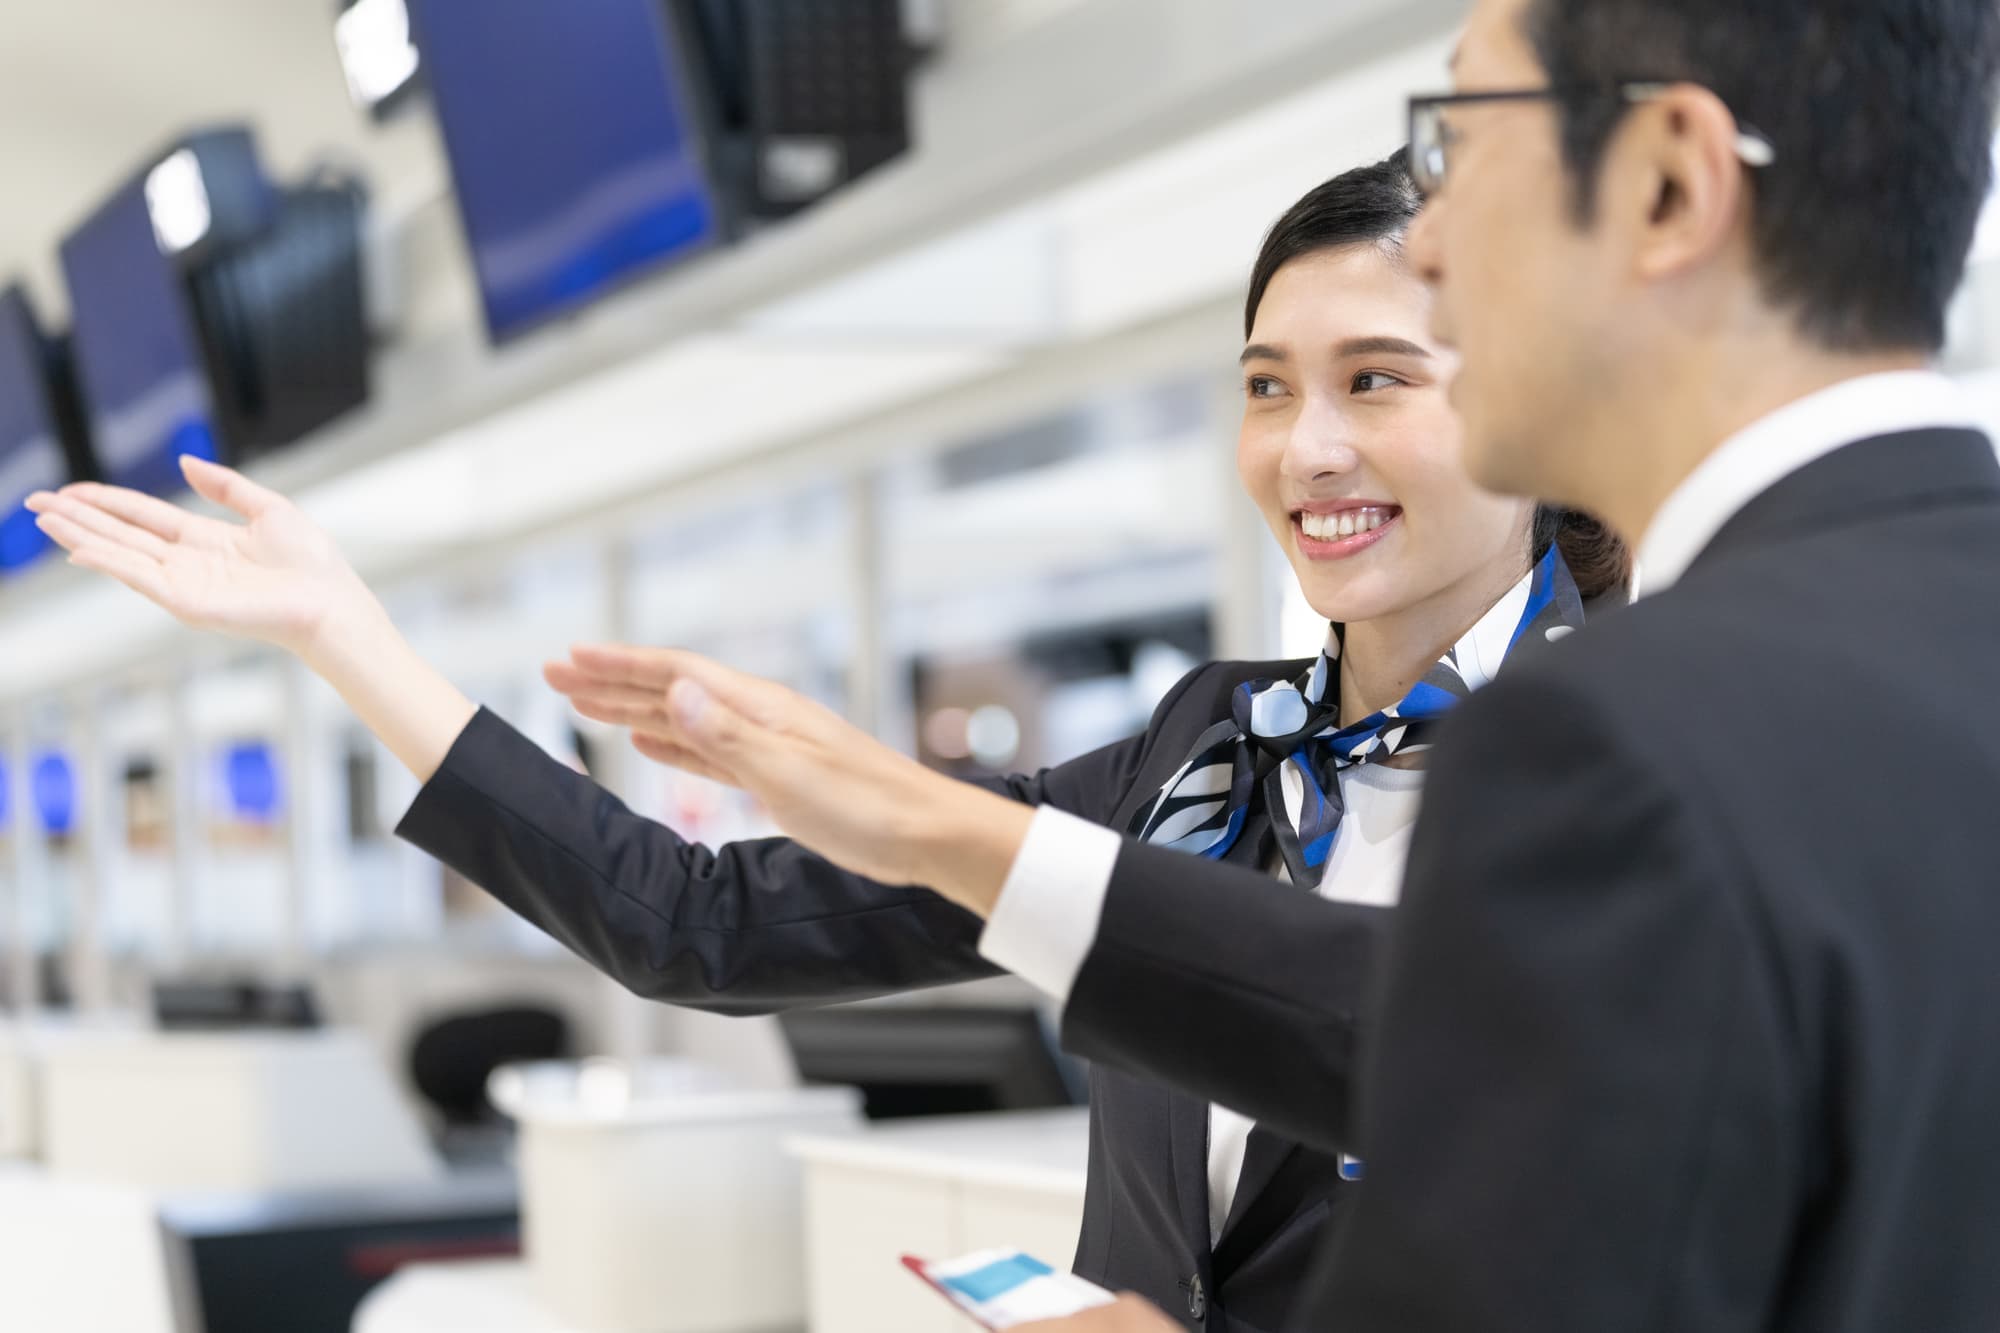 熊本空港航空会社グランんどスタッフ女性とお客様男性の案内風景